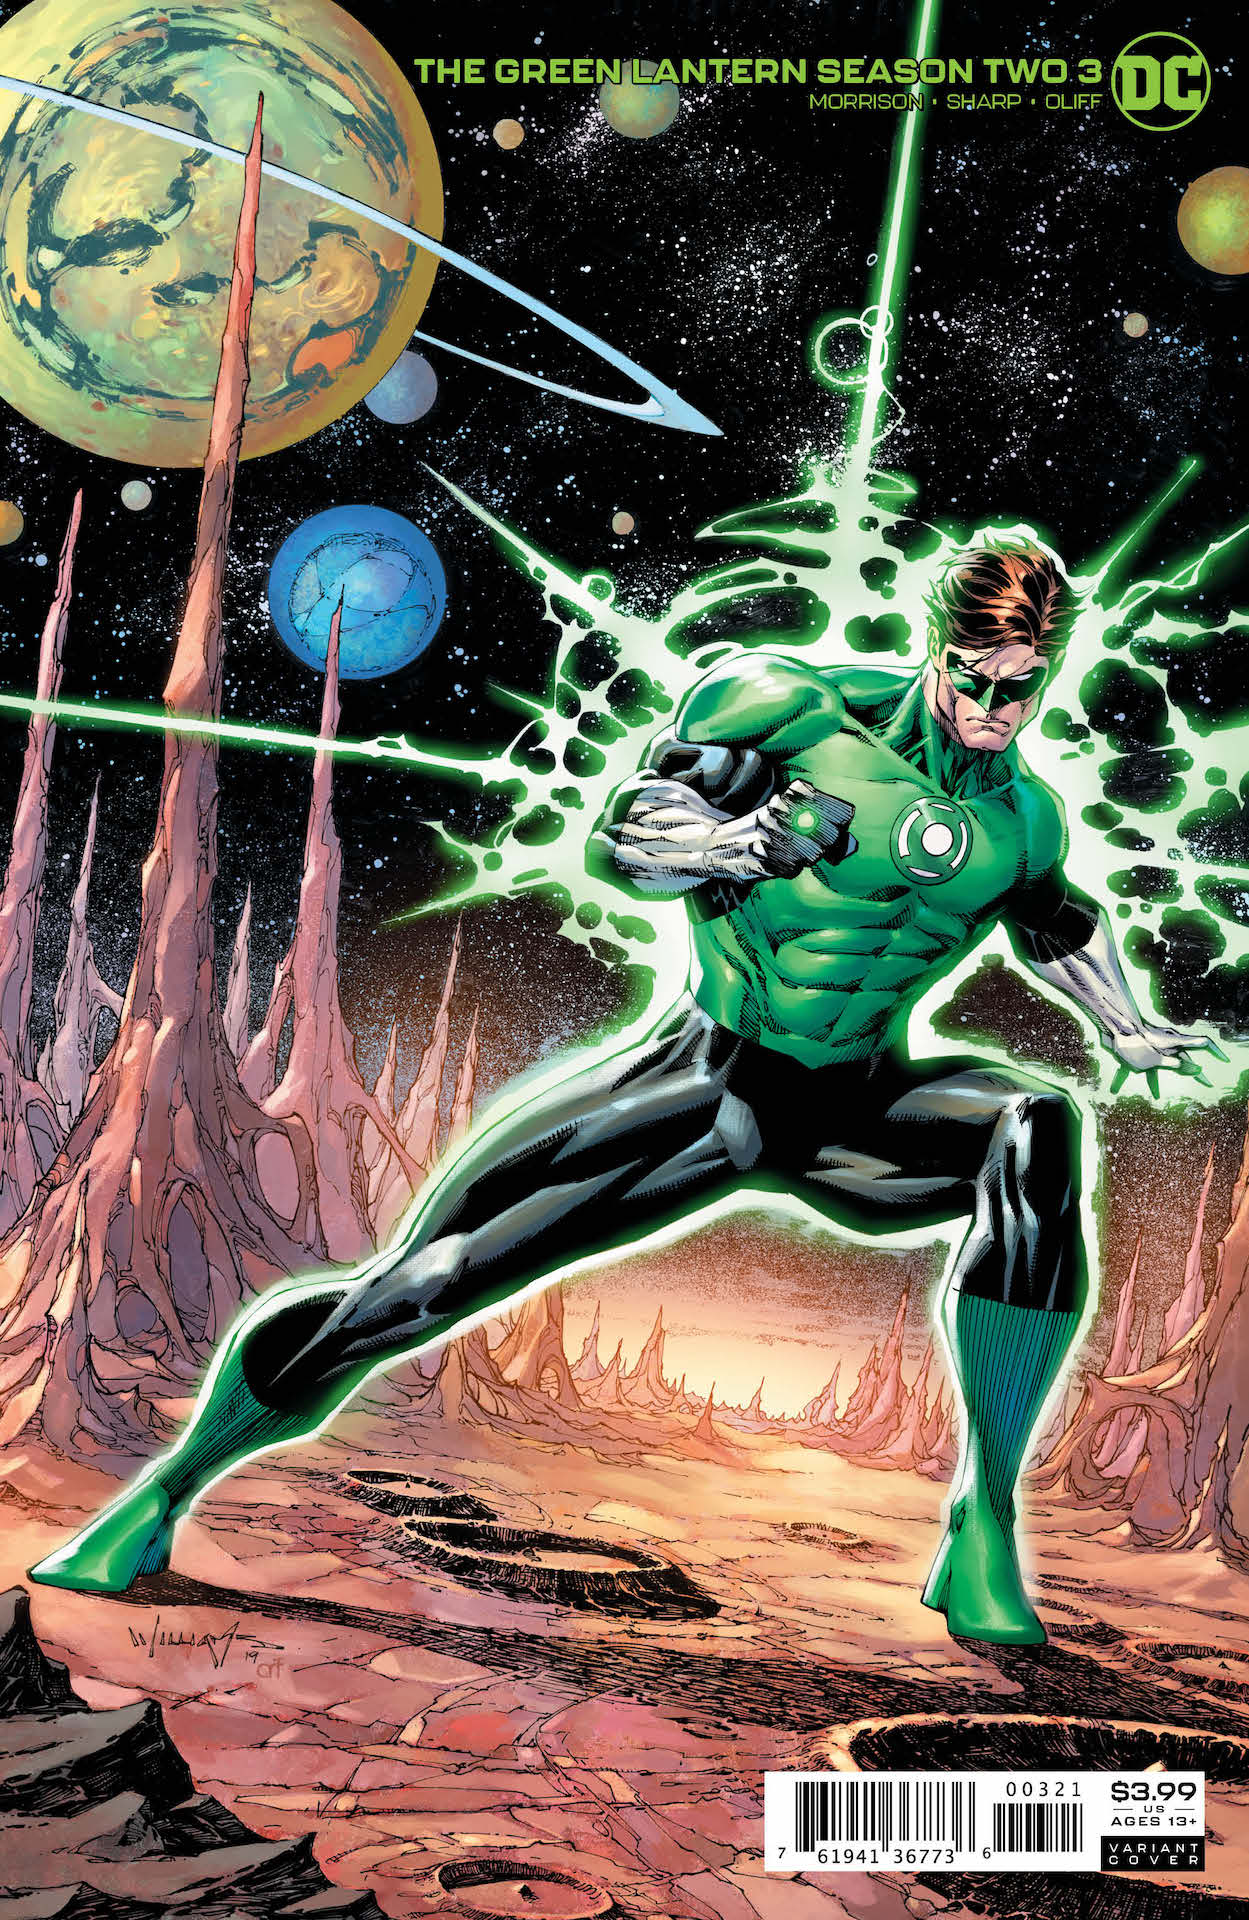 DC Preview: Green Lantern Season 2 #3